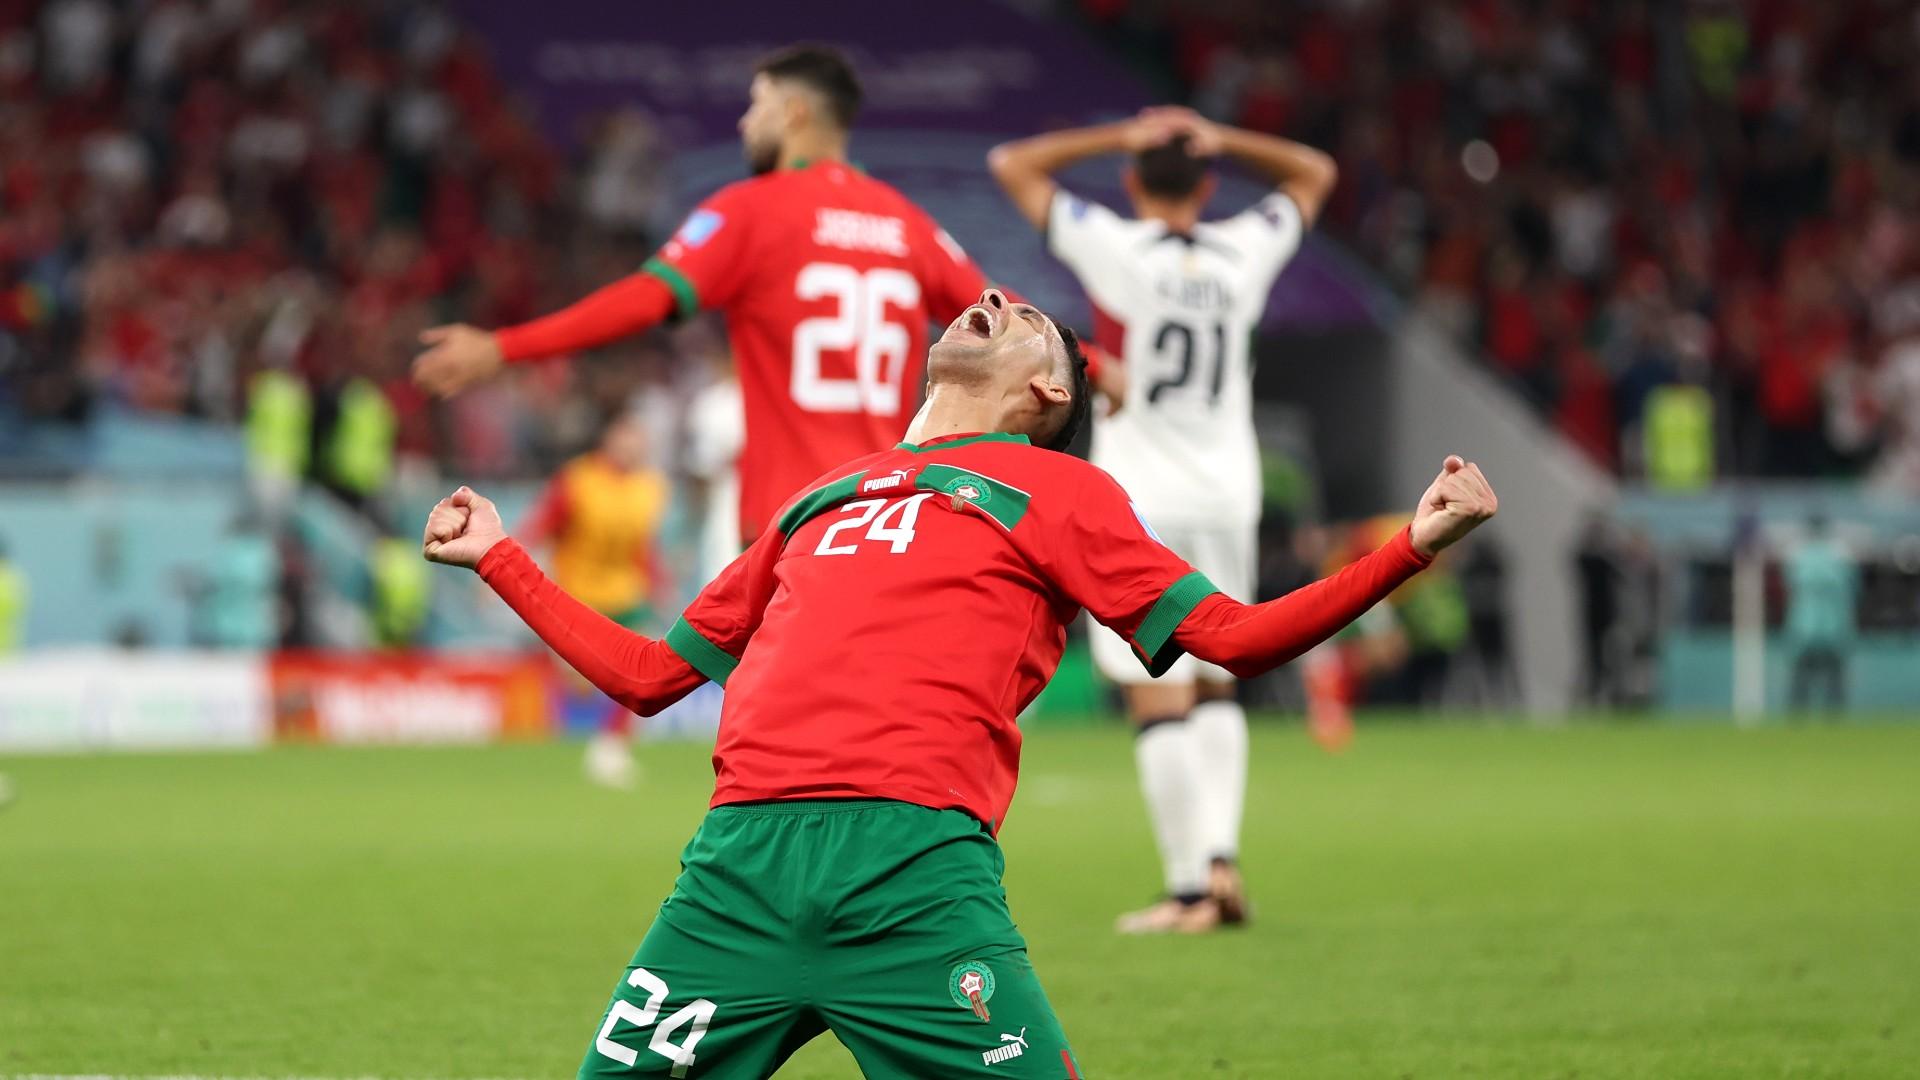 Đội hình của ĐT Maroc tại World Cup được đánh giá cao